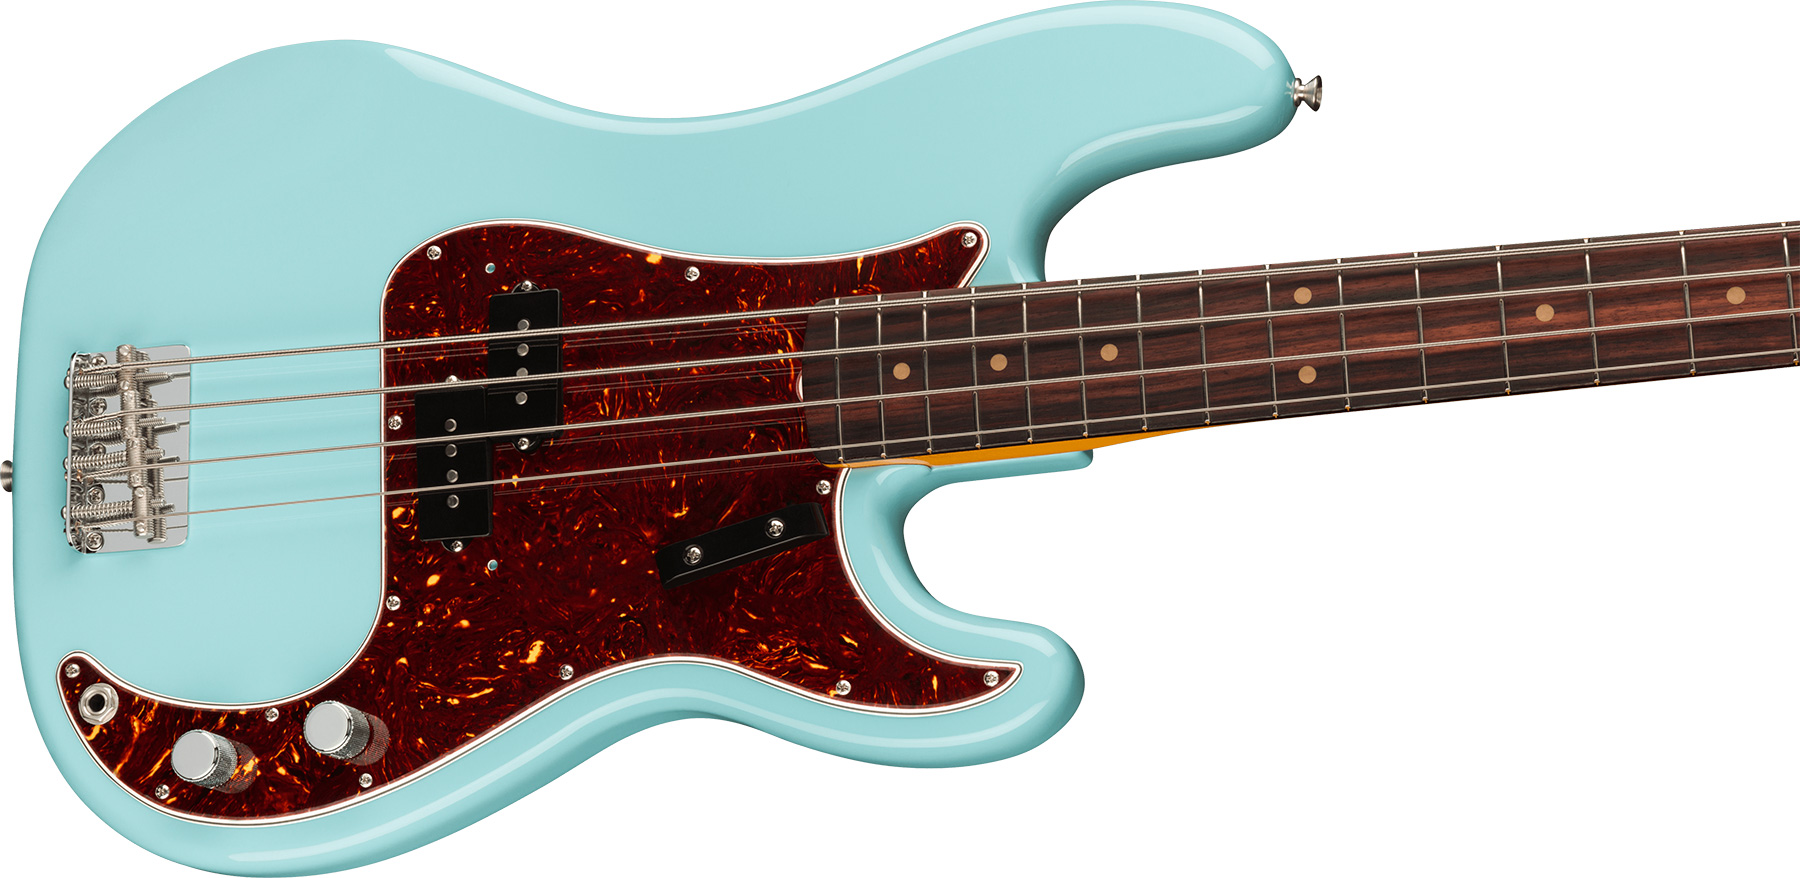 Fender Precision Bass 1960 American Vintage Ii Usa Rw - Daphne Blue - Bajo eléctrico de cuerpo sólido - Variation 2